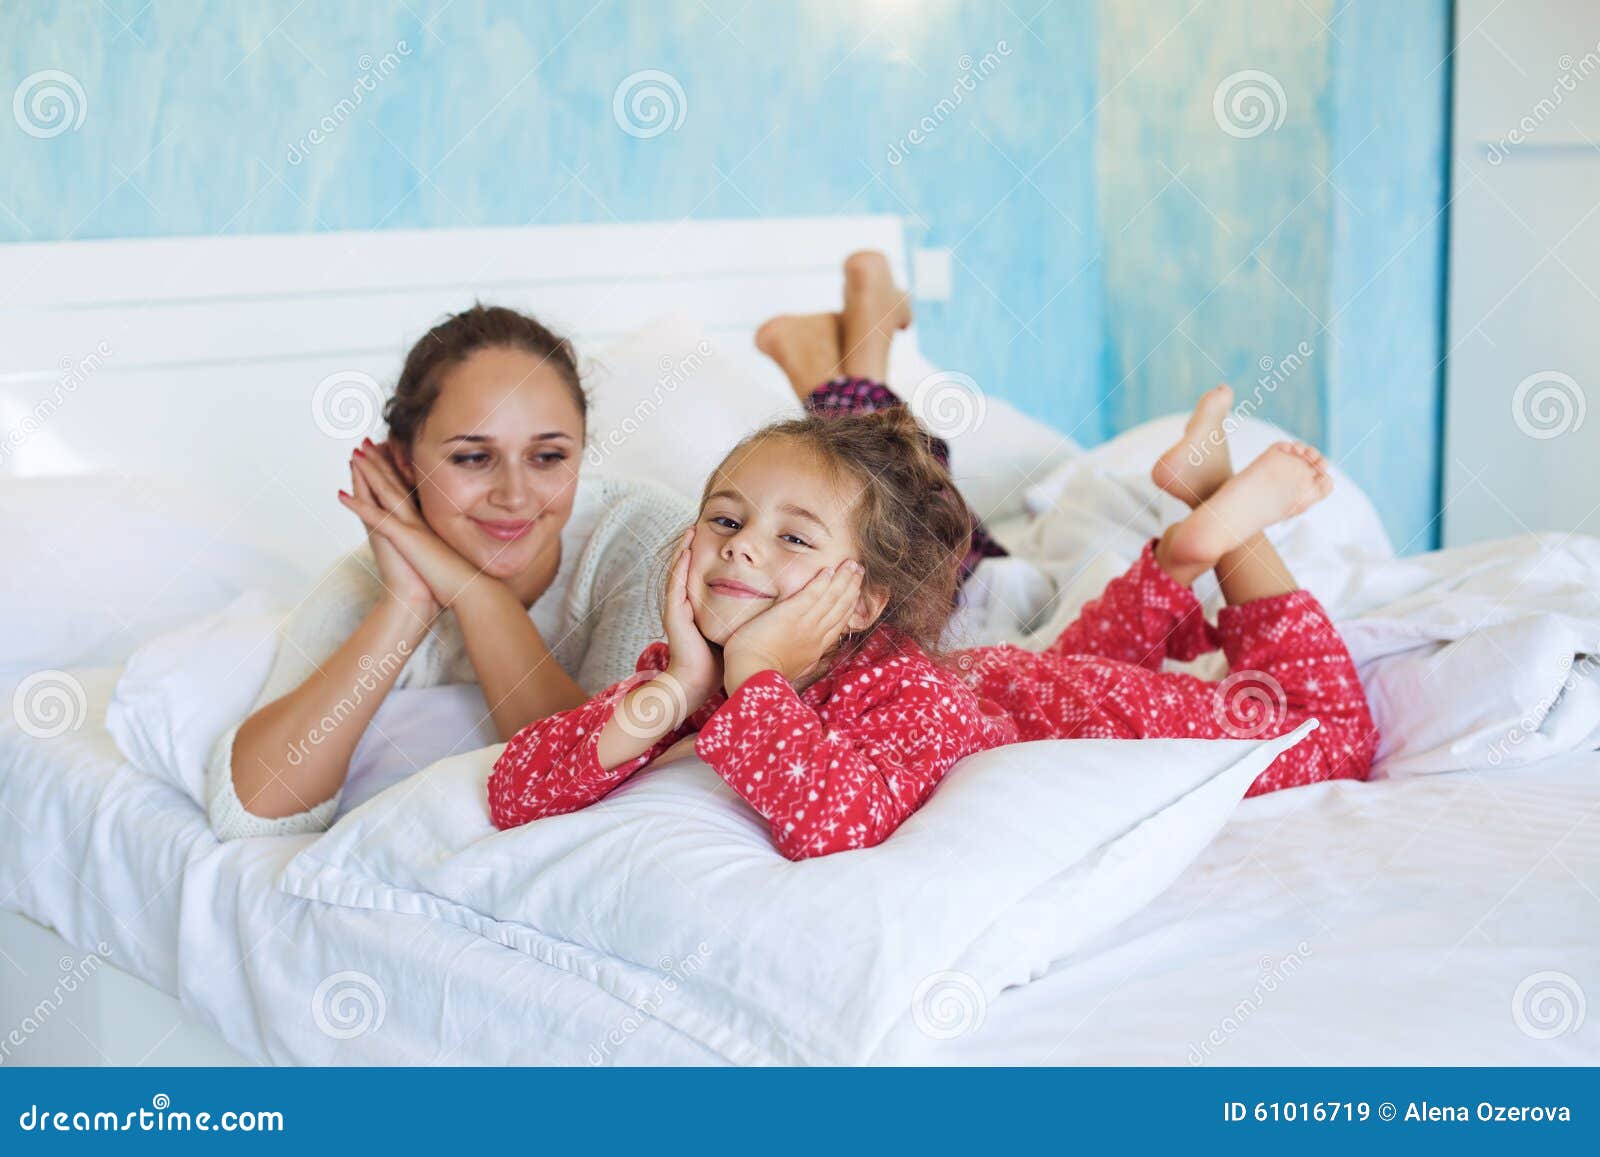 Мама с дочкой в постели. Мама с дочкой на кровати. Фотосессия мама и дочь в кровати. Мамас дочкой накрлвати. Мама и дочь в кровати в пижамах.